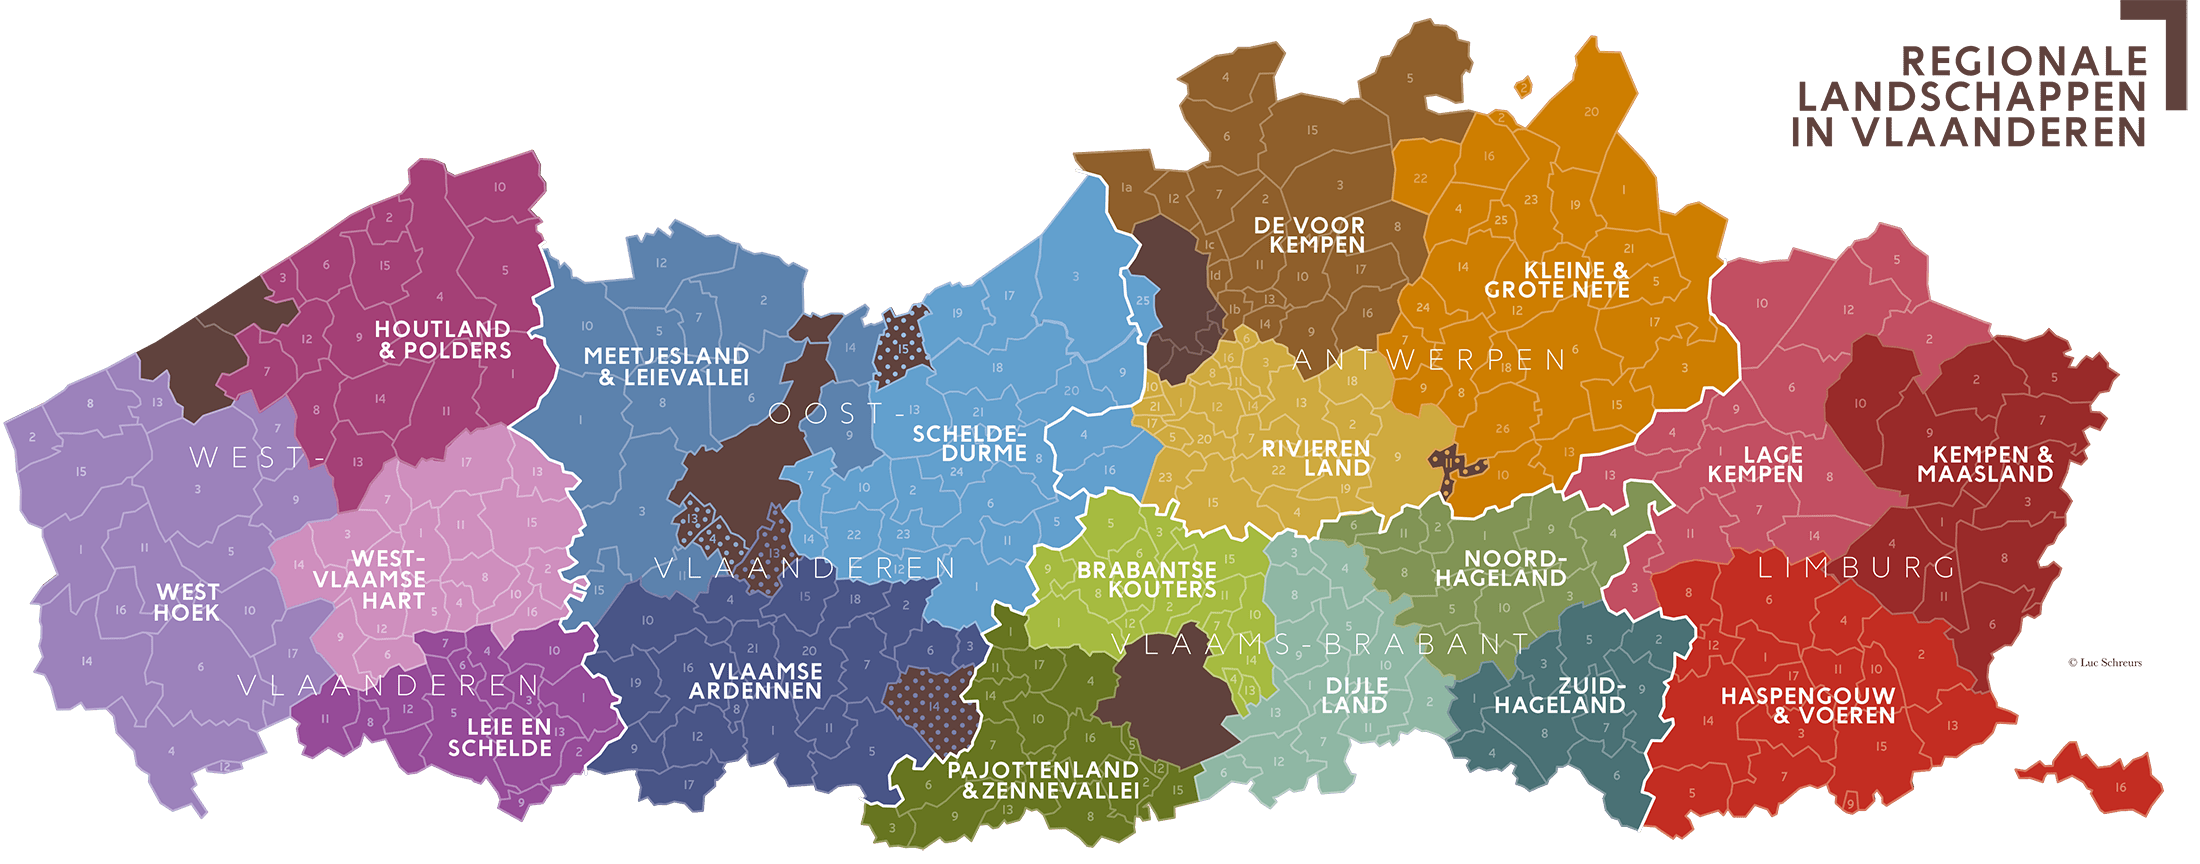 Kaart Regionale Landschappen in Vlaanderen